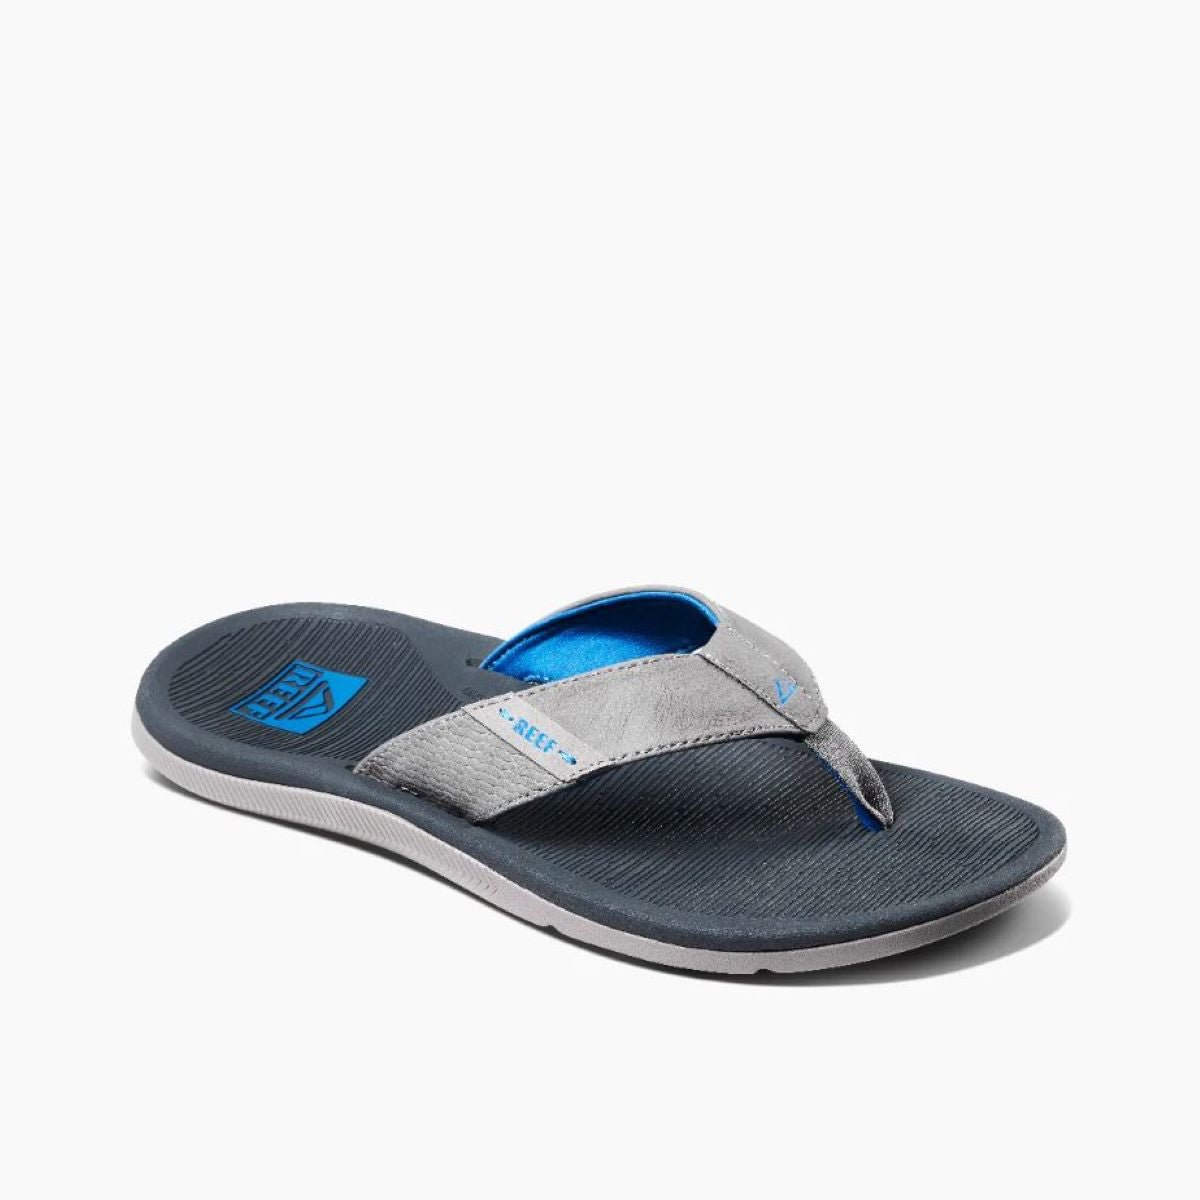 Reef Santa Ana Men's Sandal in Blue/Light Grey - BoardCo